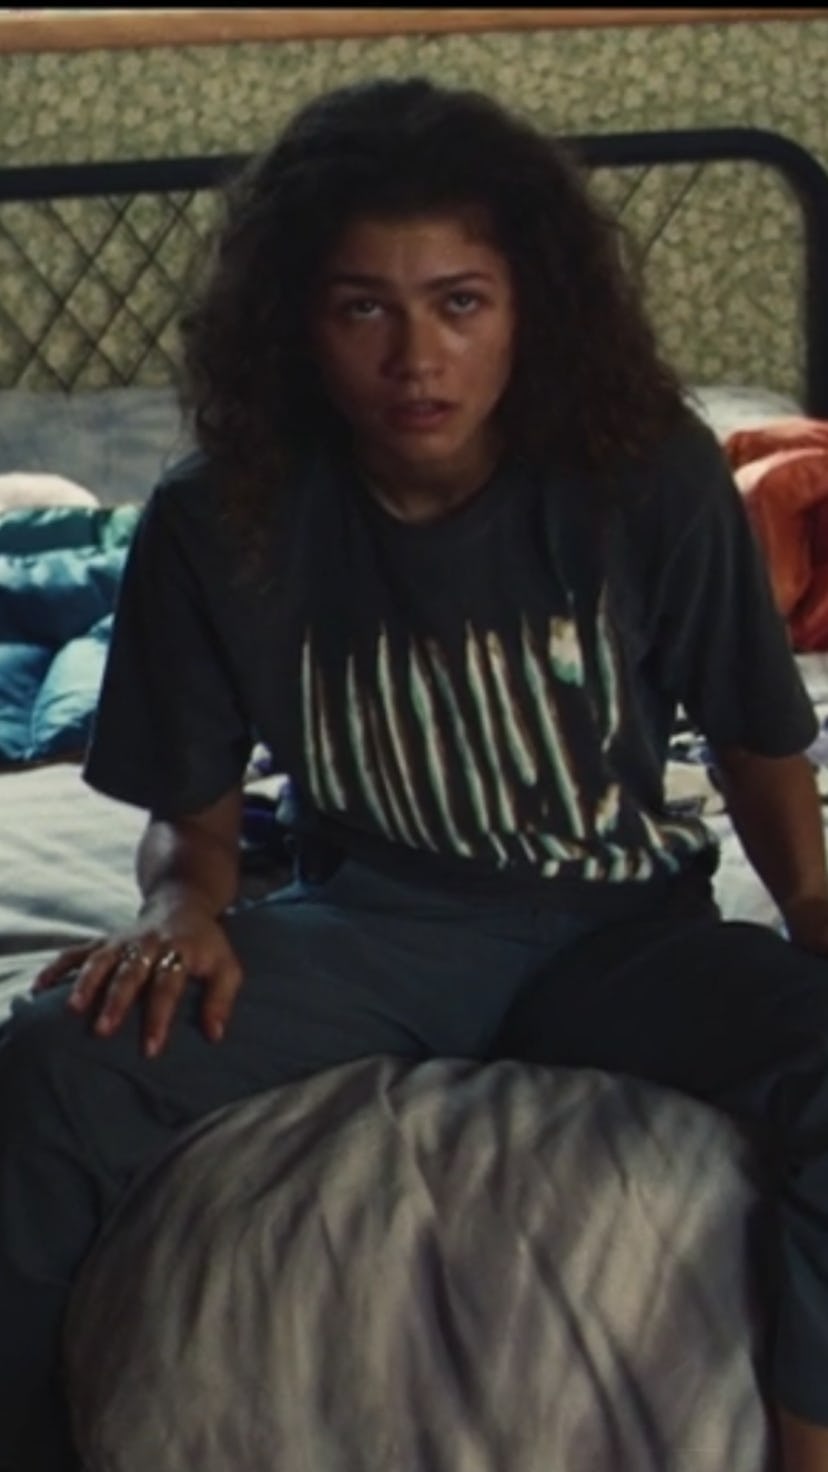 Zendaya as Rue in "Euphoria" season 2, episode 5 wearing a charcoal t-shirt.